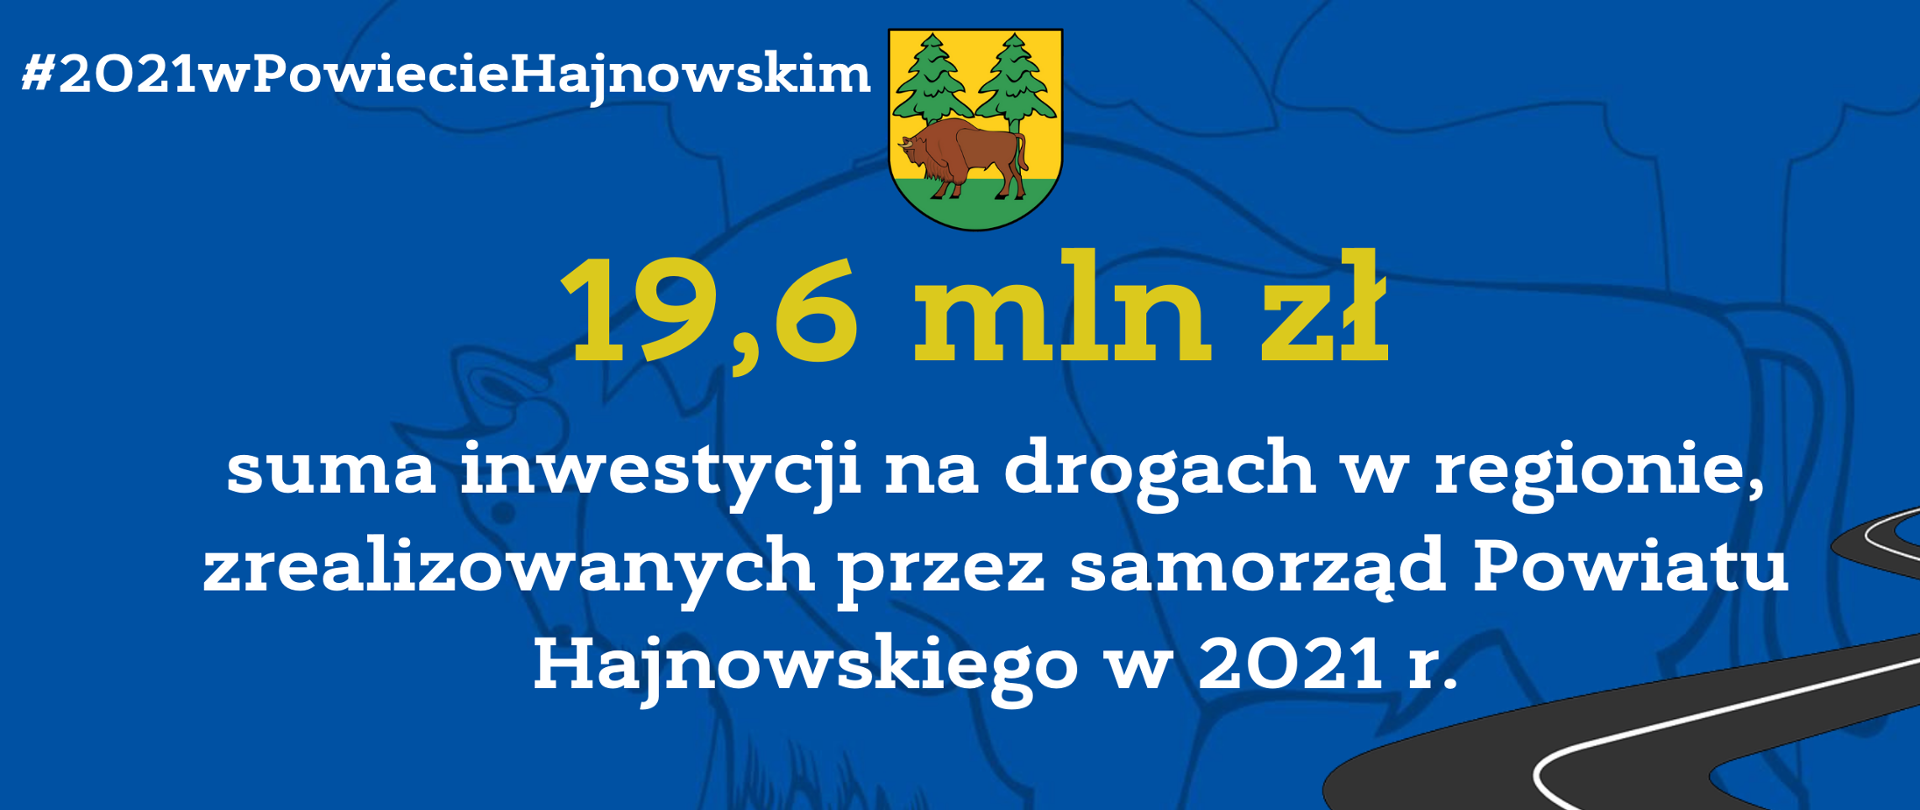 #2021wPowiecieHajnowskim 19,6 mln zł - suma inwestycji na drogach w regionie, zrealizowanych przez samorząd Powiatu Hajnowskiego w 2021 r. 